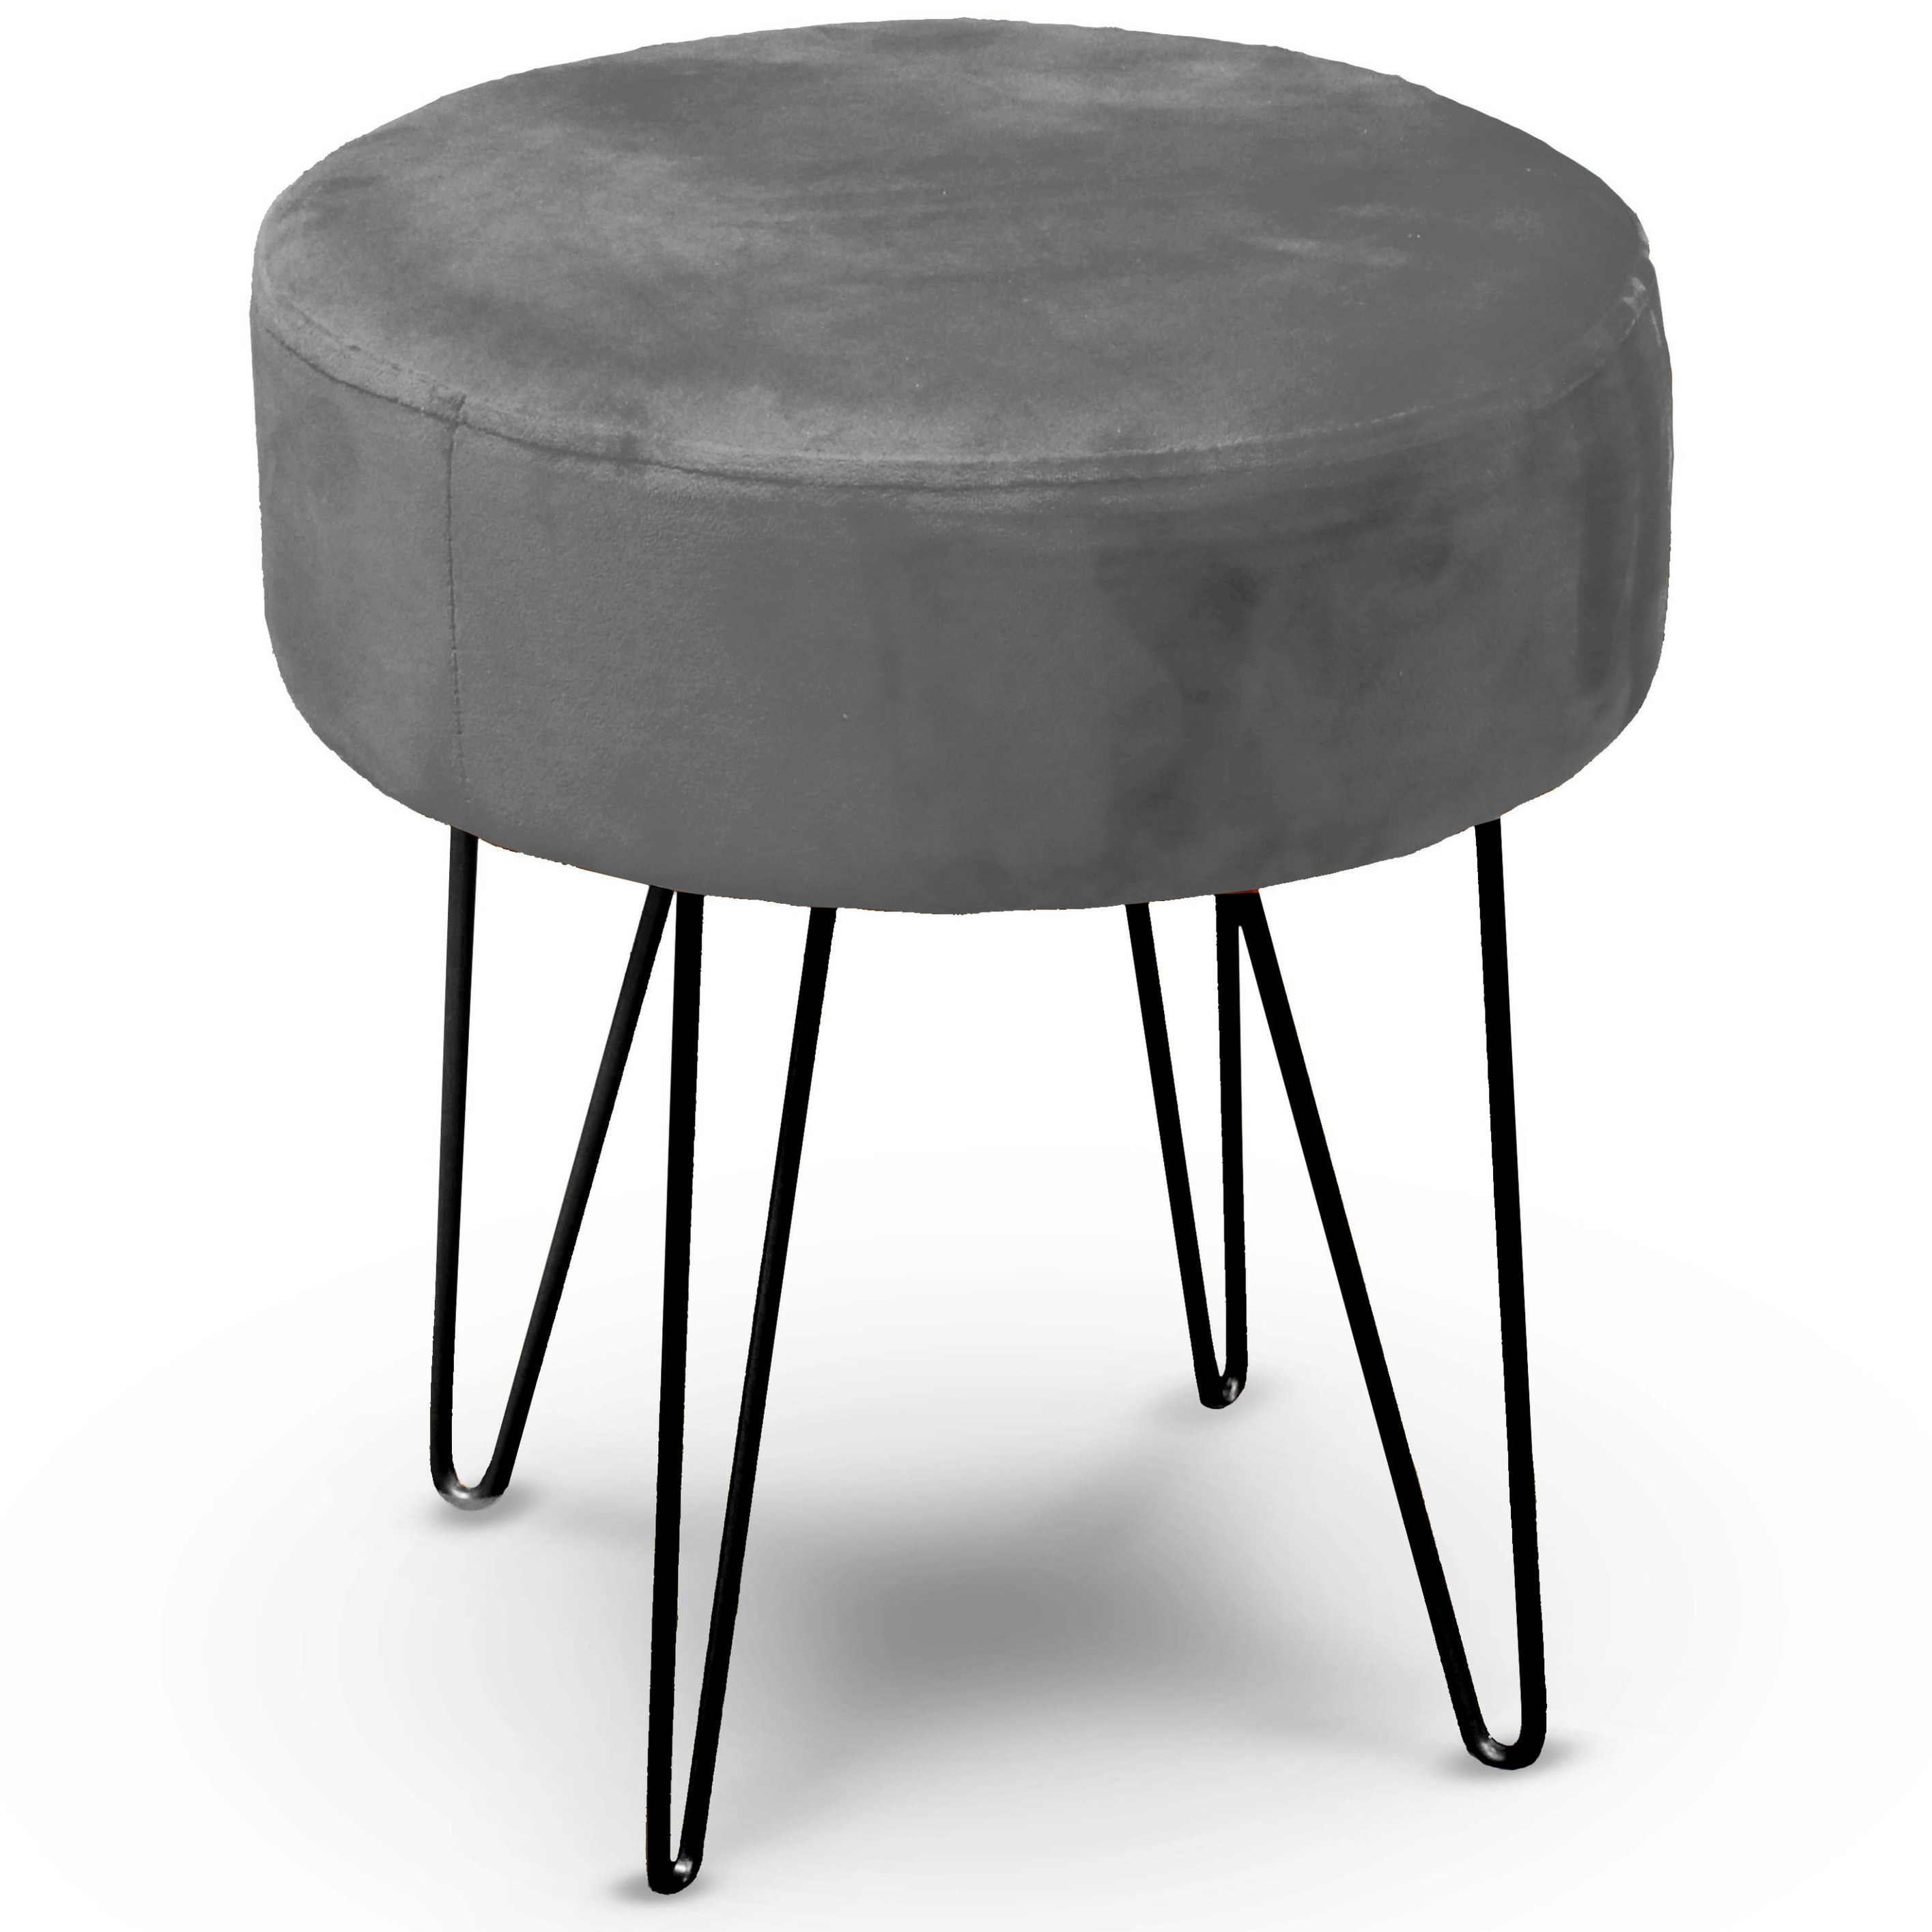 Velvet kruk Davy - grijs - metaal/stof - D35 x H40 cm - bijzet stoeltjes